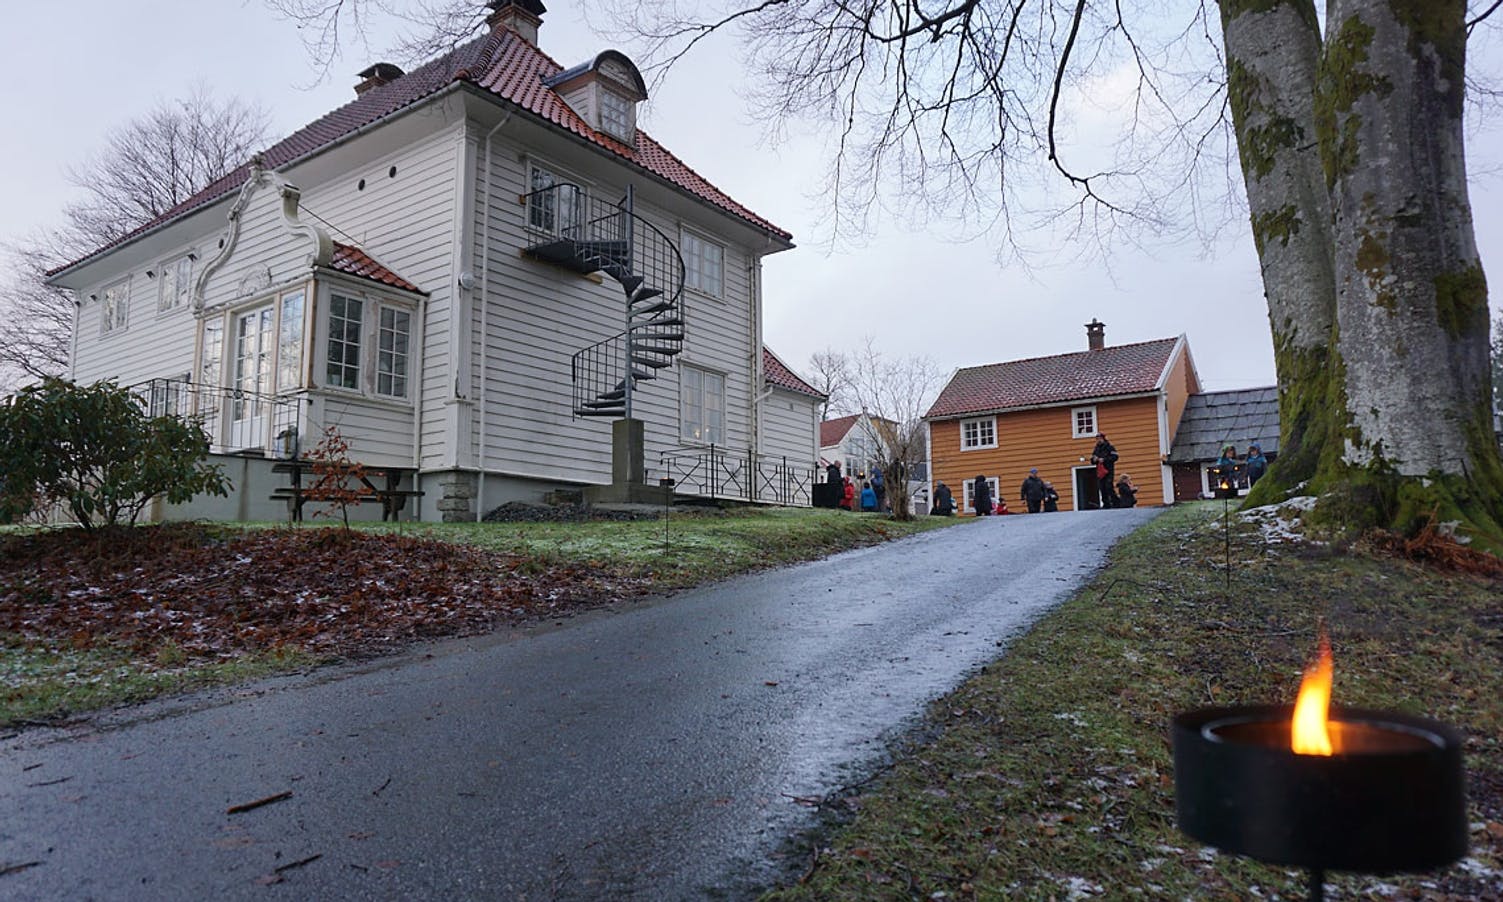 600 tok turen til nissehuset i Borgstova. (Foto: KVB)